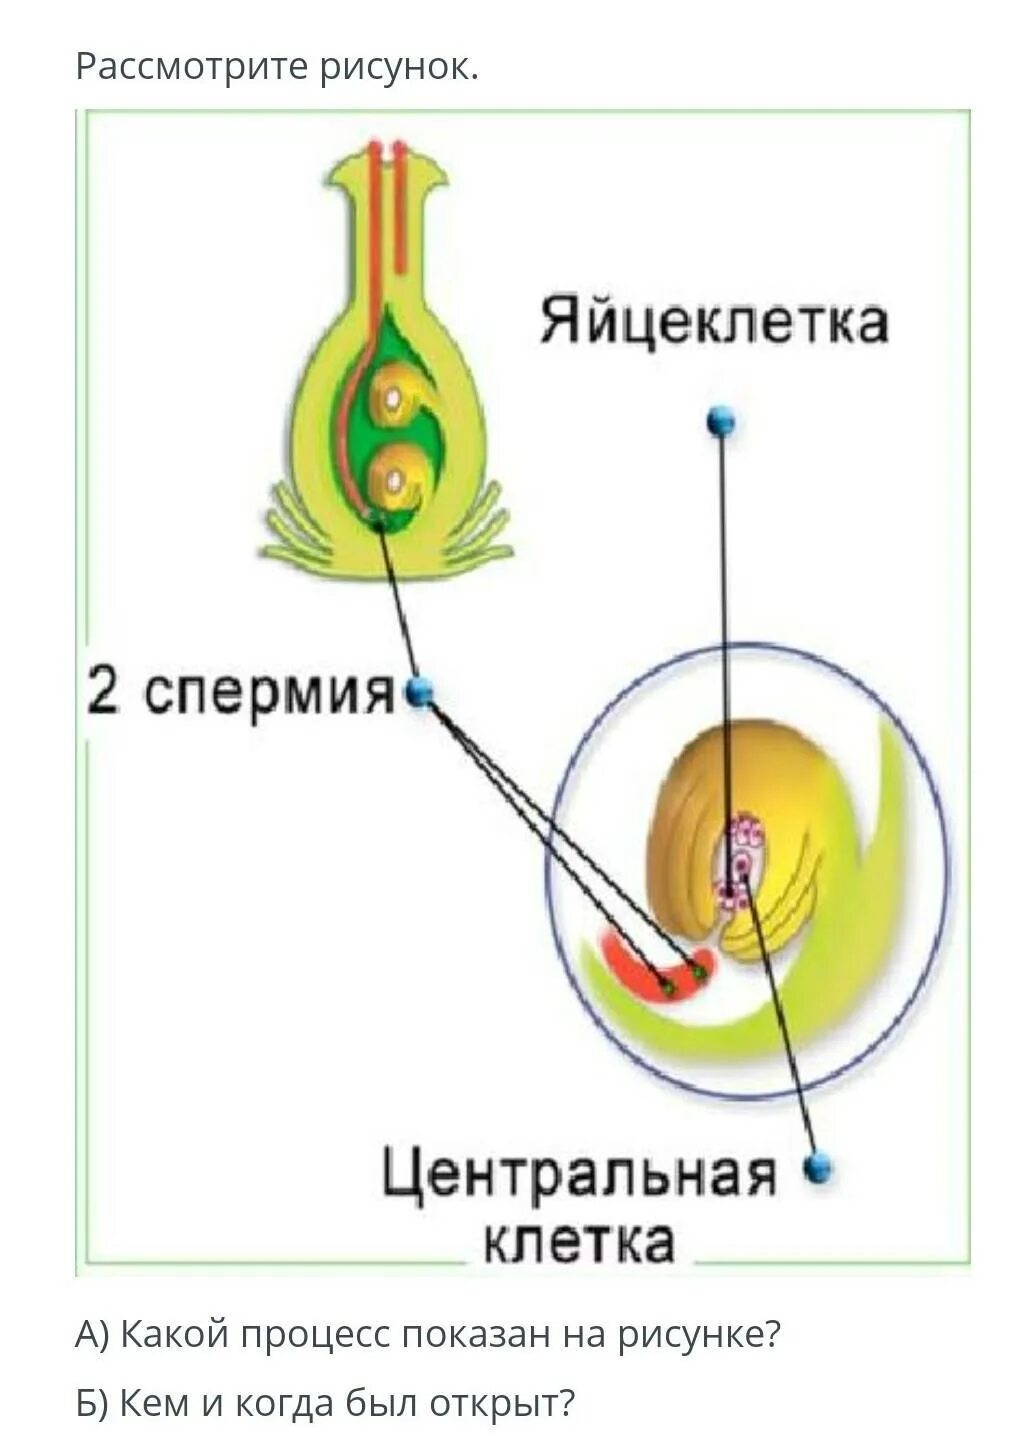 Оплодотворенная спермием центральная клетка. 1спермий и Центральная клетка. Спермии яйцеклетка Центральная клетка и. Спермии у растений. Два спермия Центральная клетка.